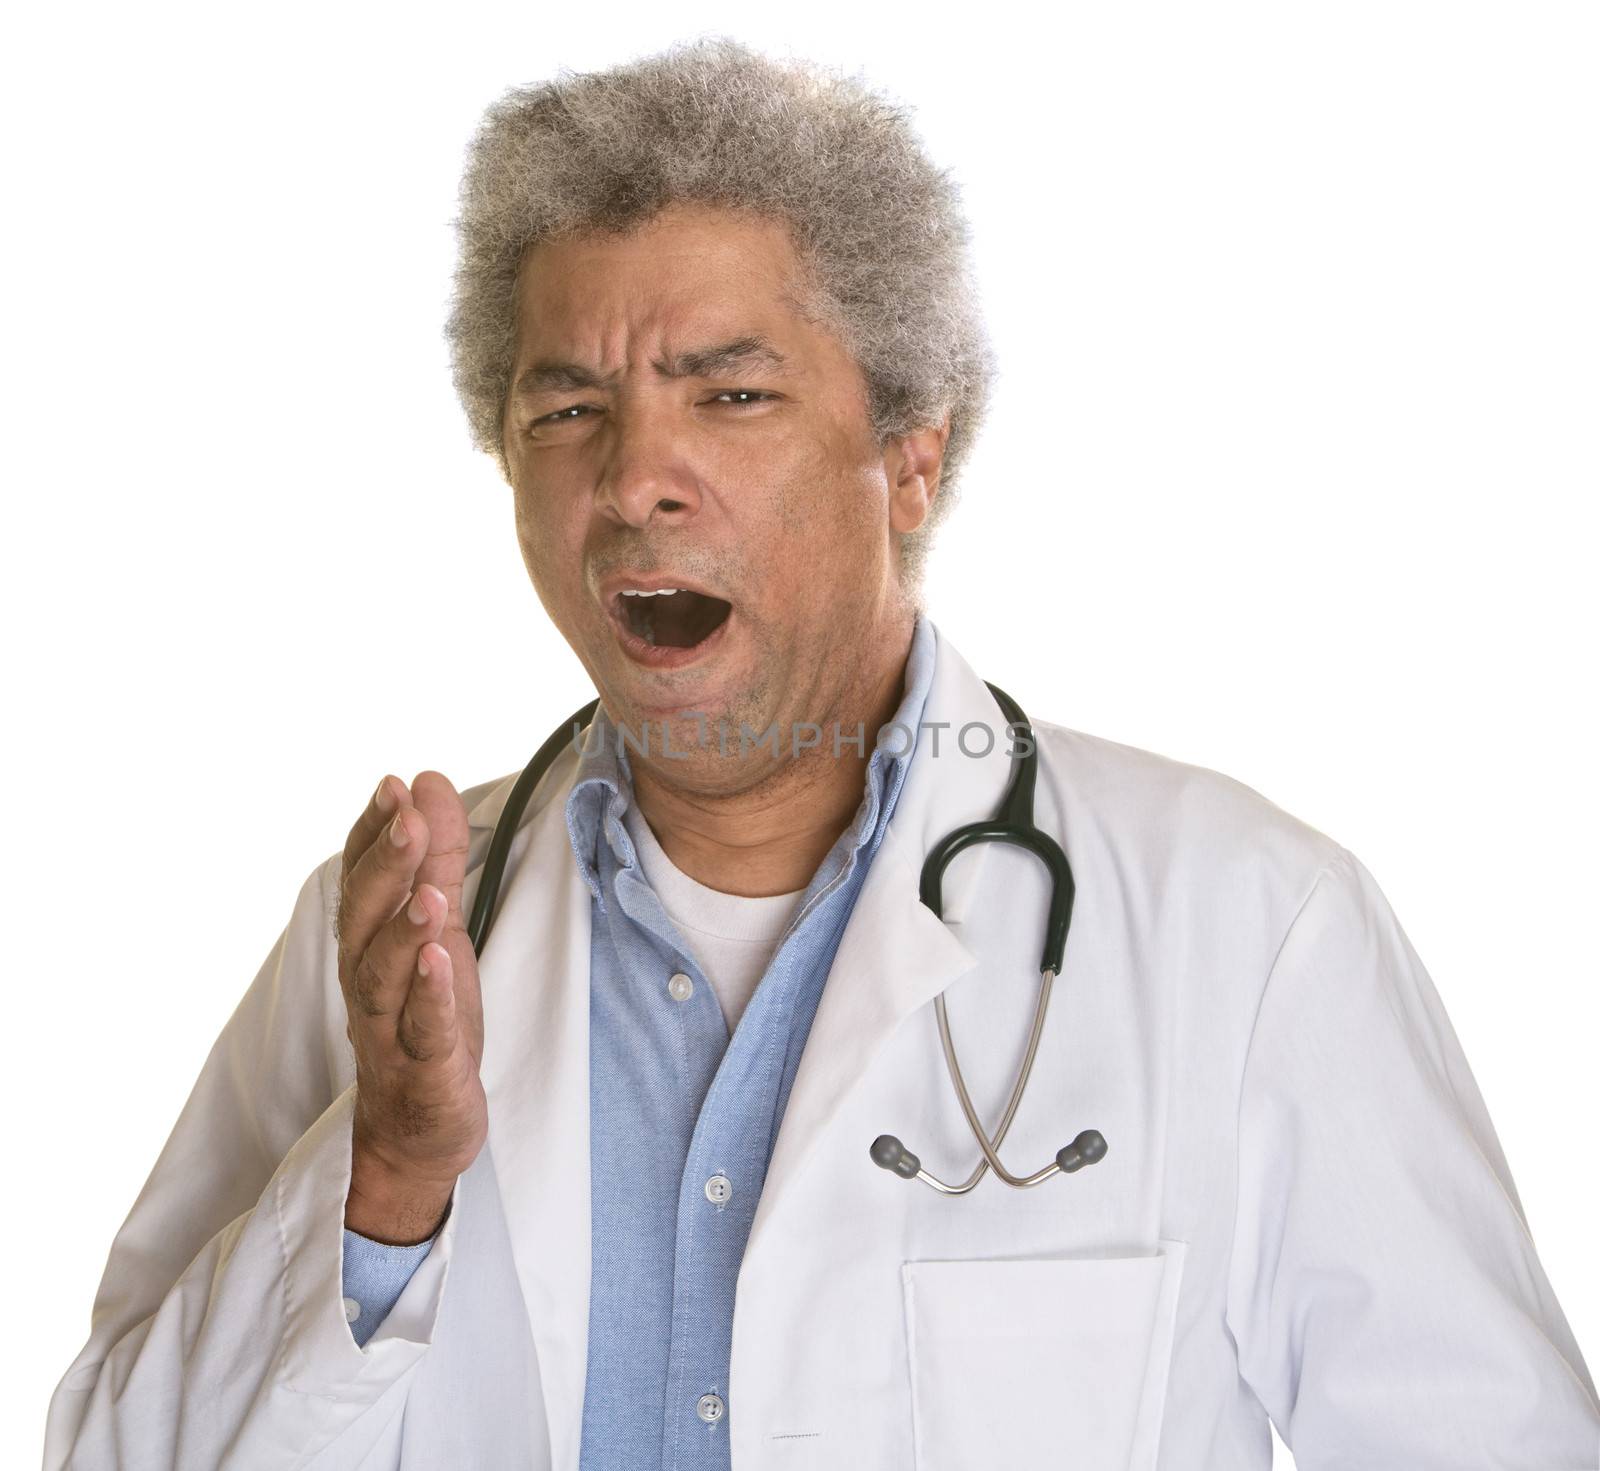 Sleepy medical doctor yawning over white background